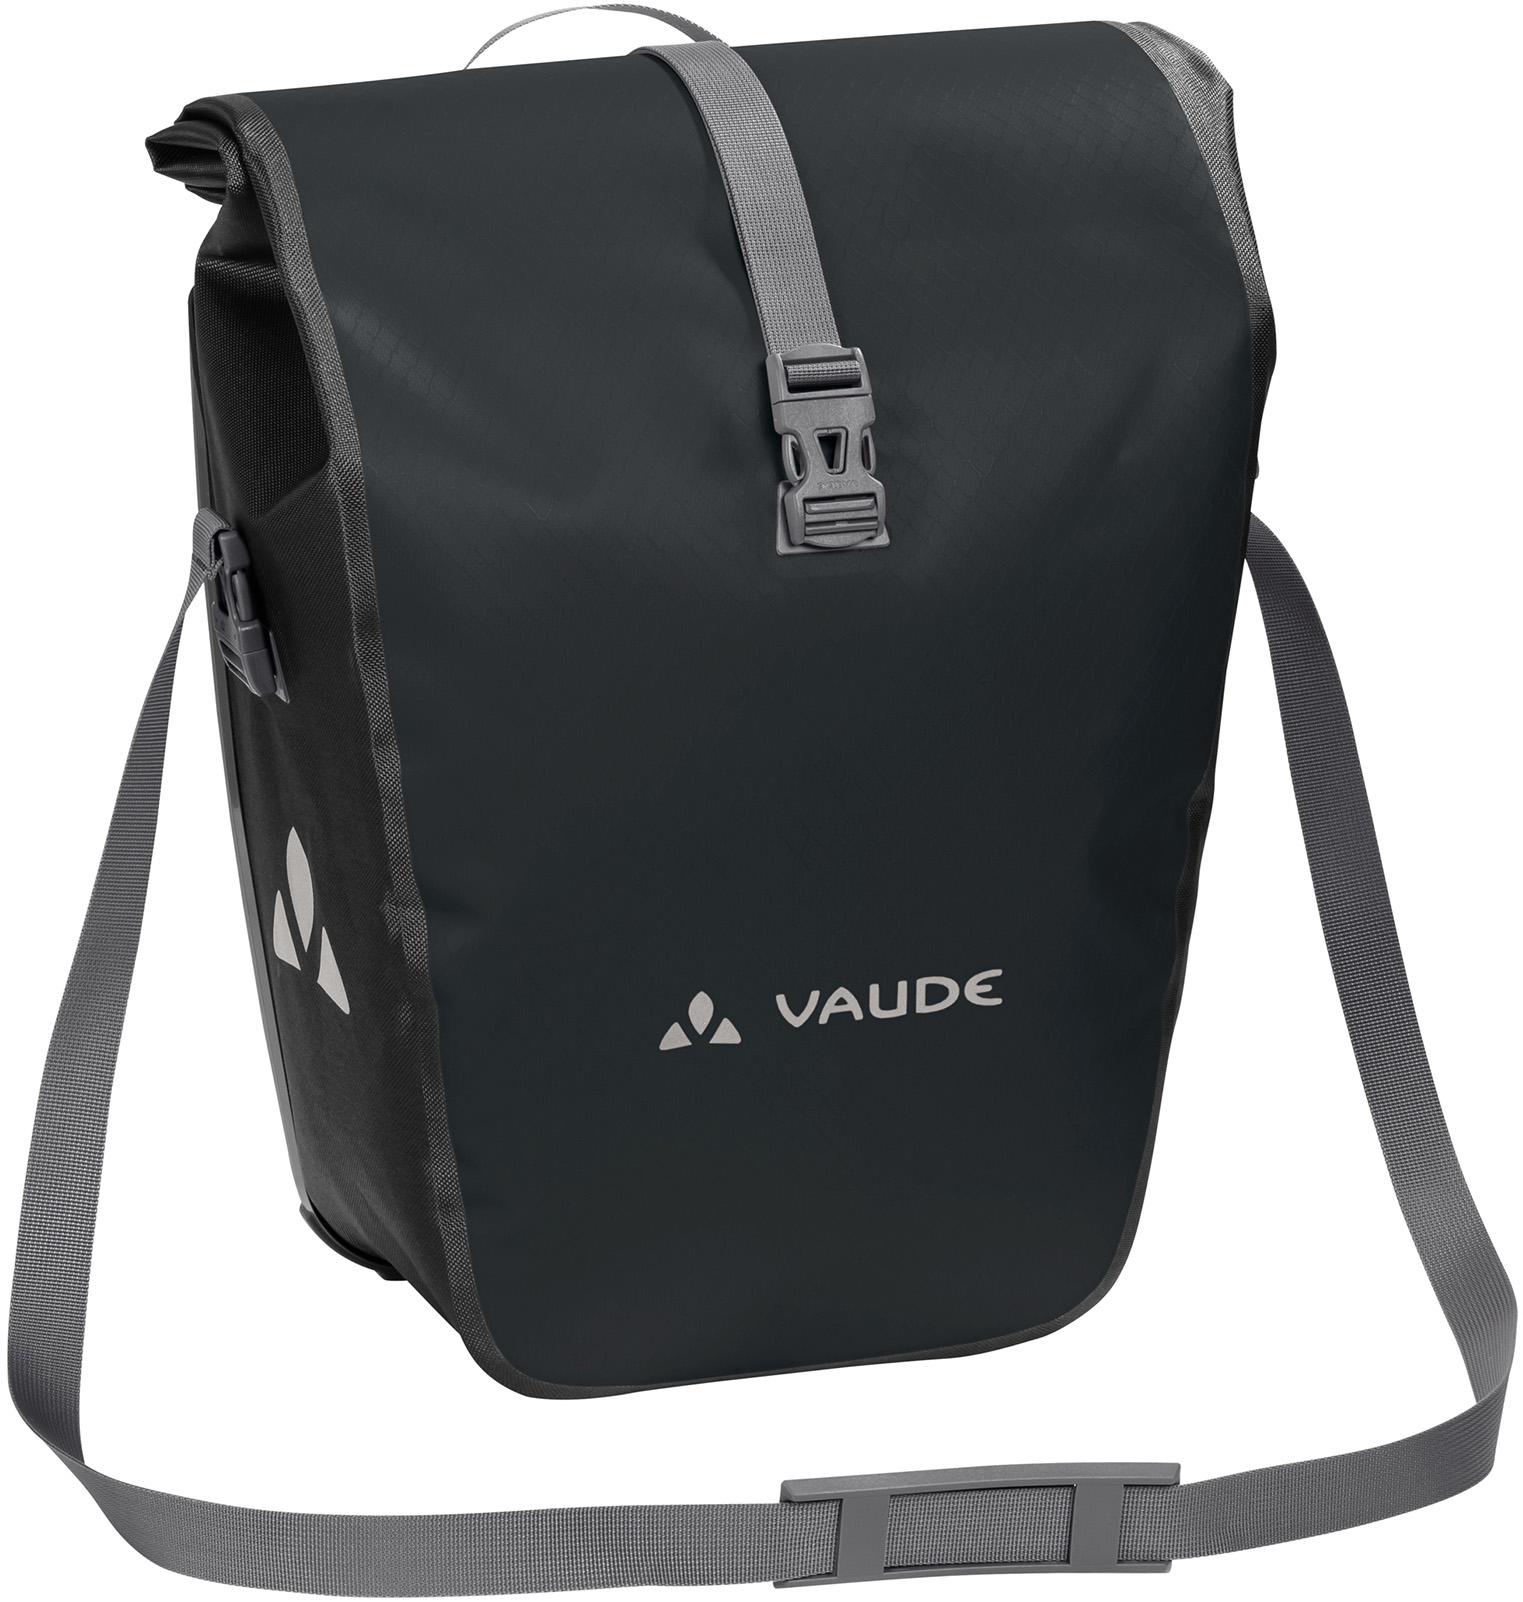 Vaude Aqua Back Rear Pannier Bike Bag - Black